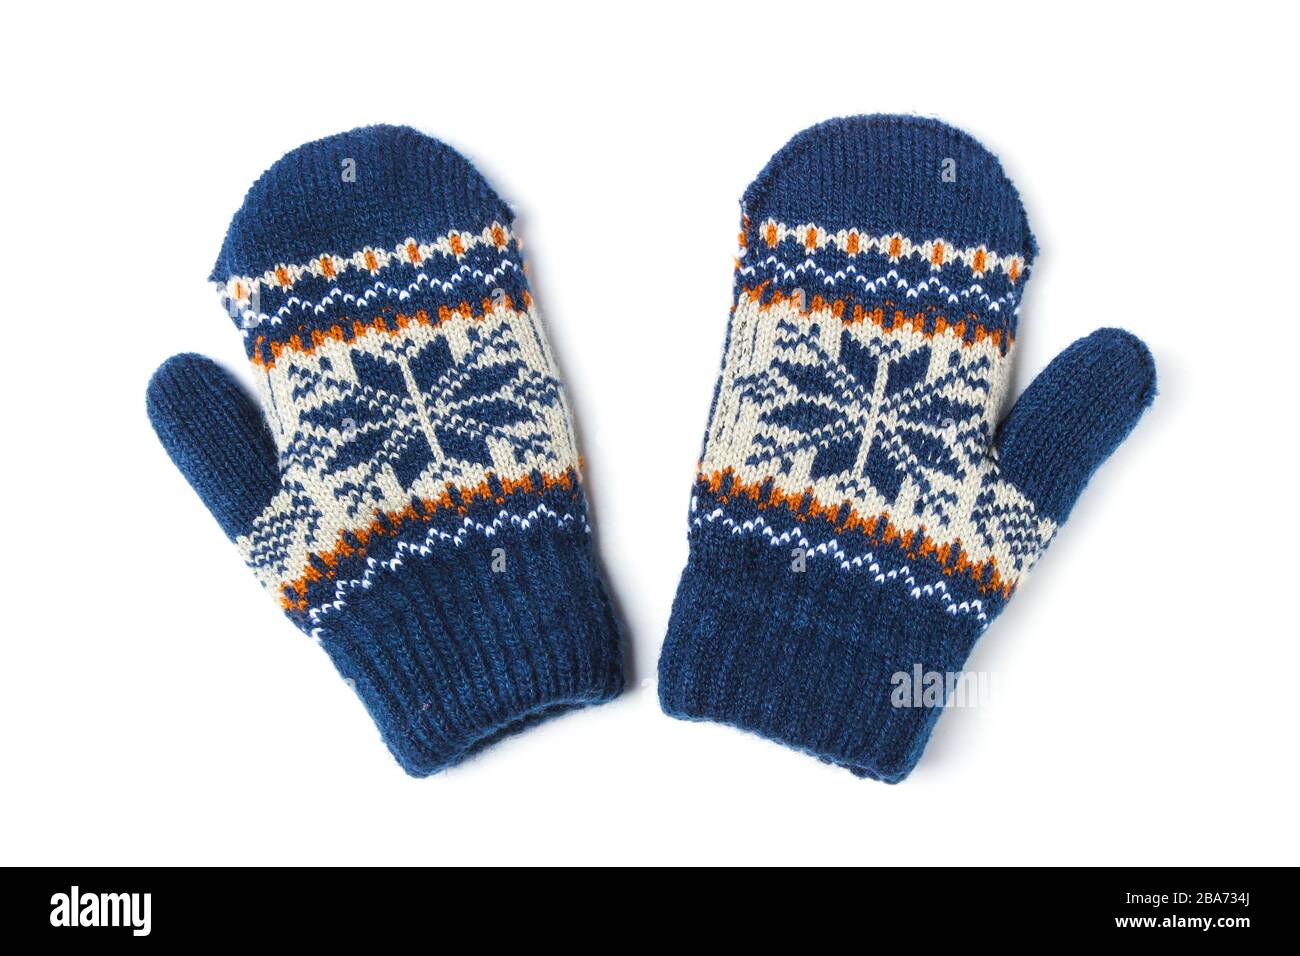 Santa Children's Knitted Christmas Gloves Snowflake Design Unisex 